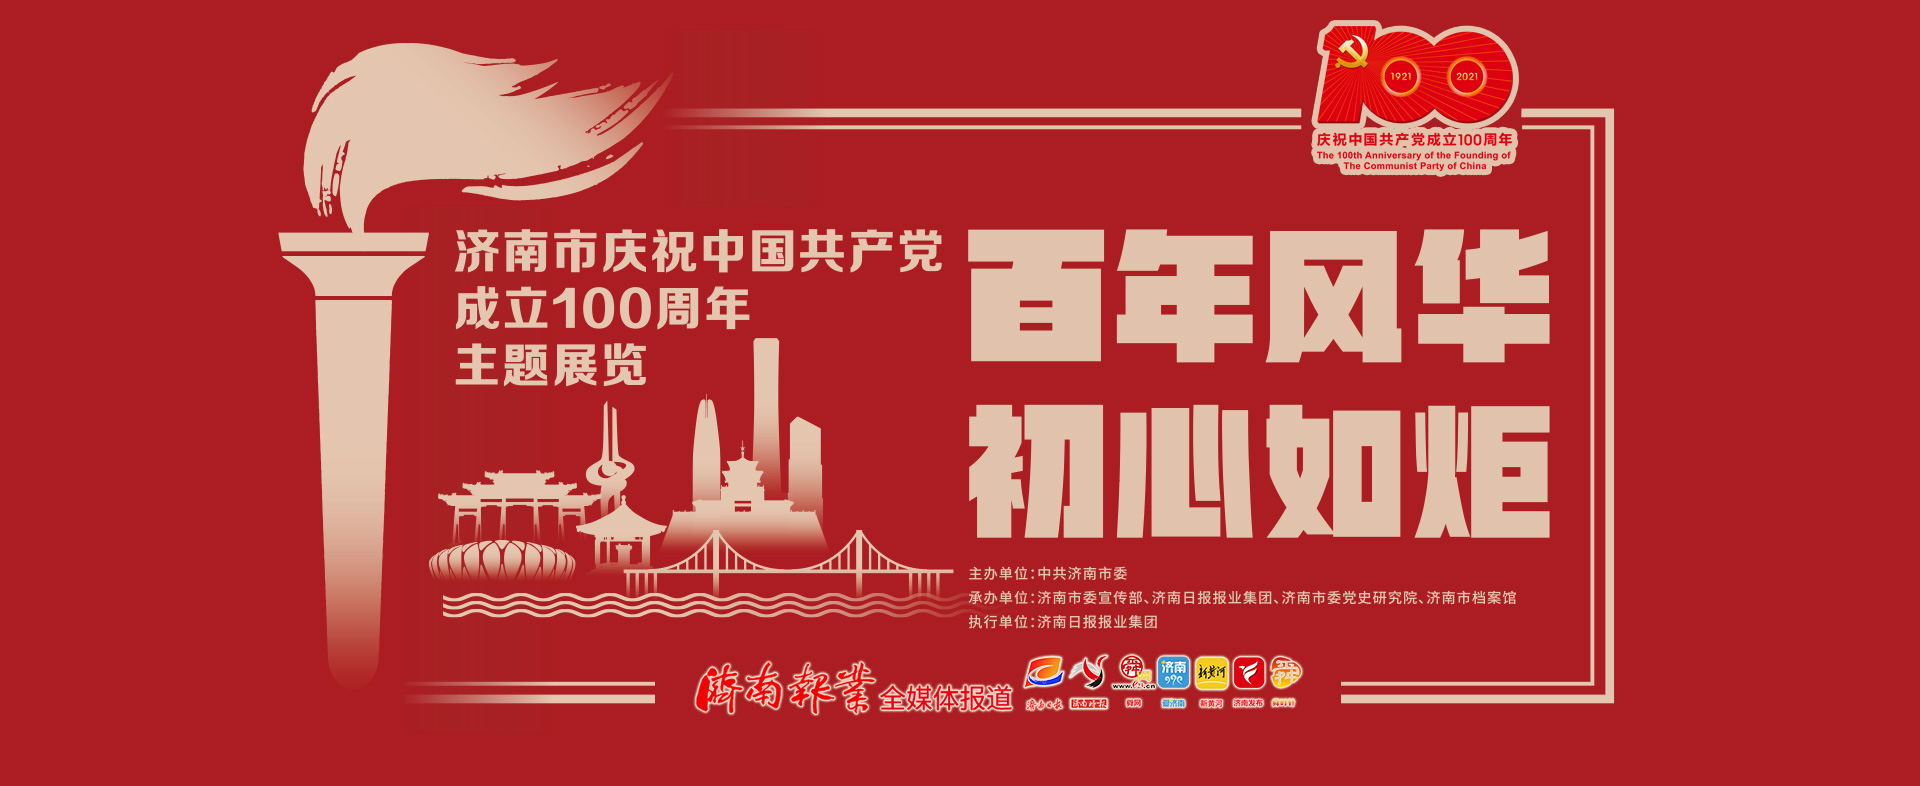 庆祝中国共产党成立100周年主题展览征集实物 老八路后人回忆先辈除夕夜和鬼子周旋